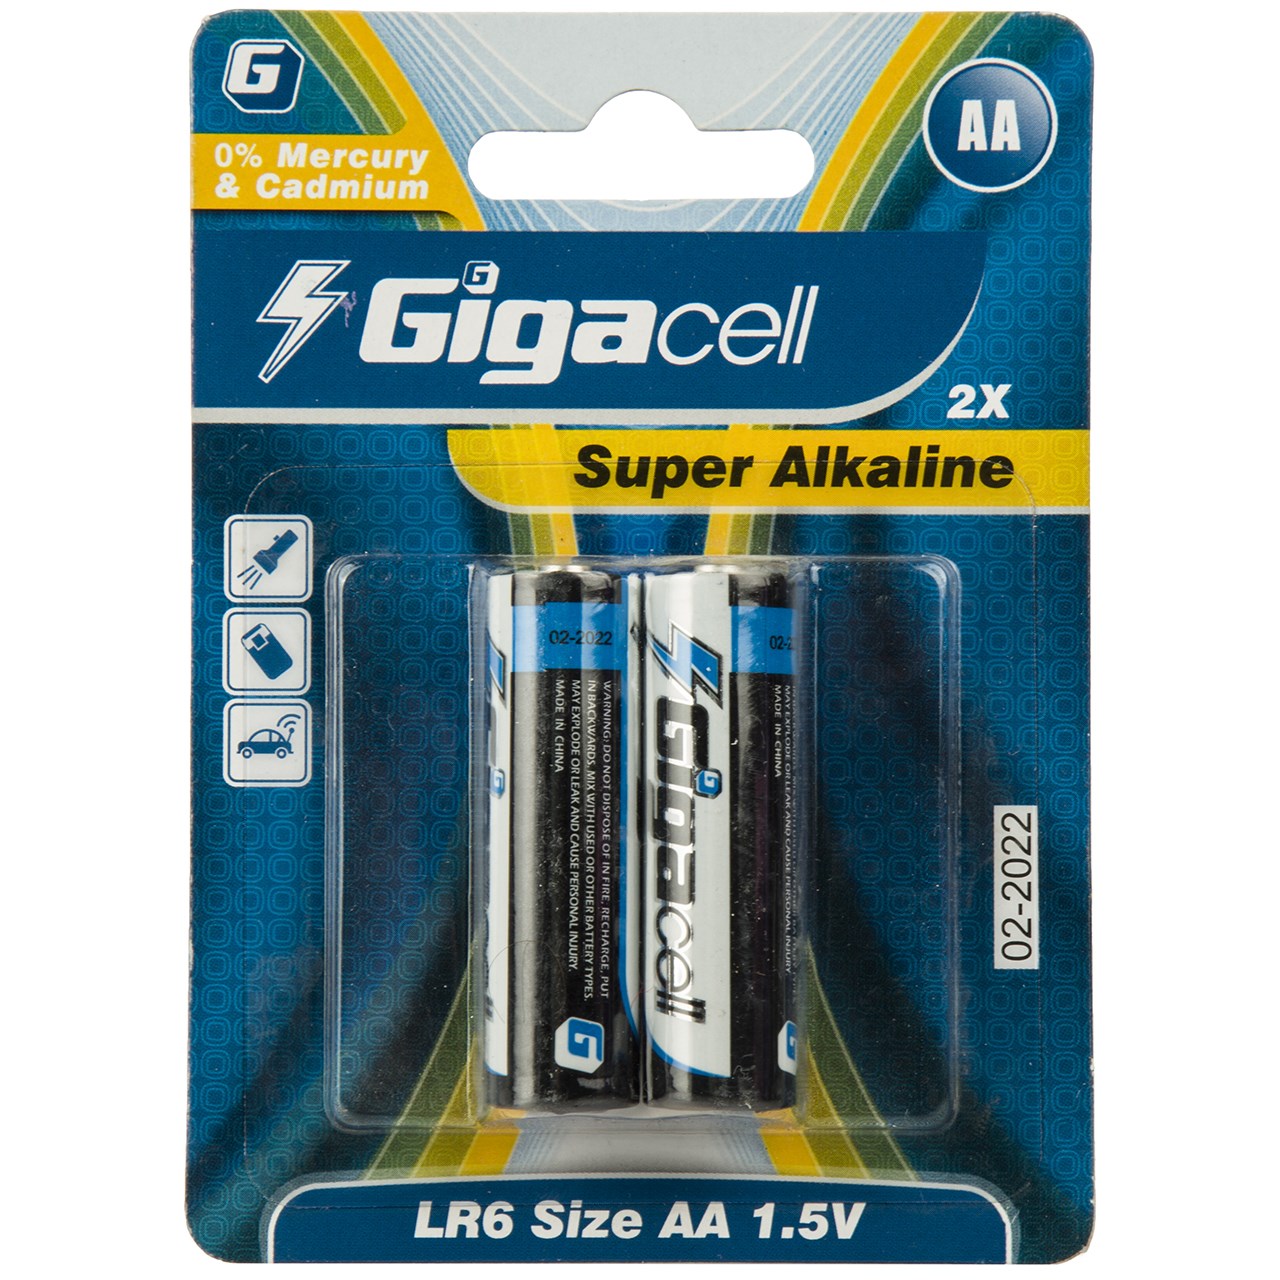 باتری قلمی گیگاسل مدل Super Alkaline - بسته 2 عددی